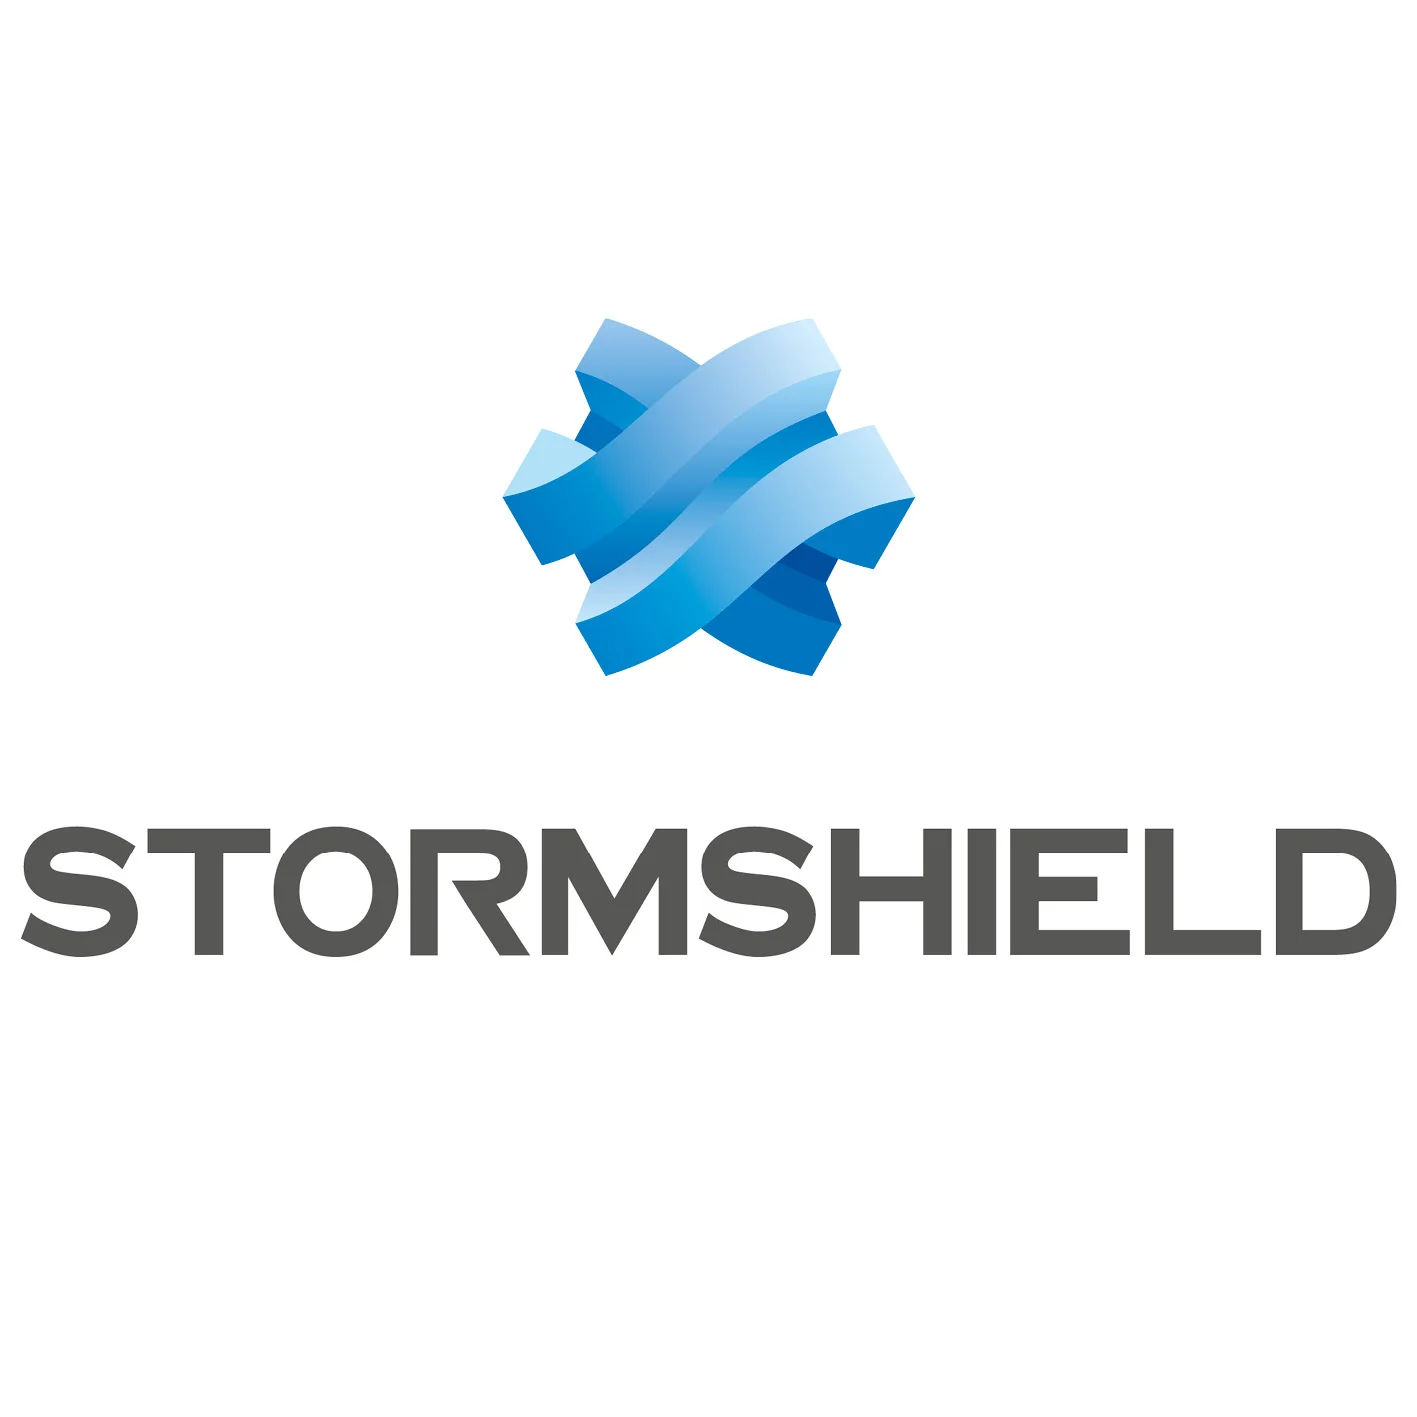 Nouveau partenariat STORMSHIELD / CRIS RESEAUX